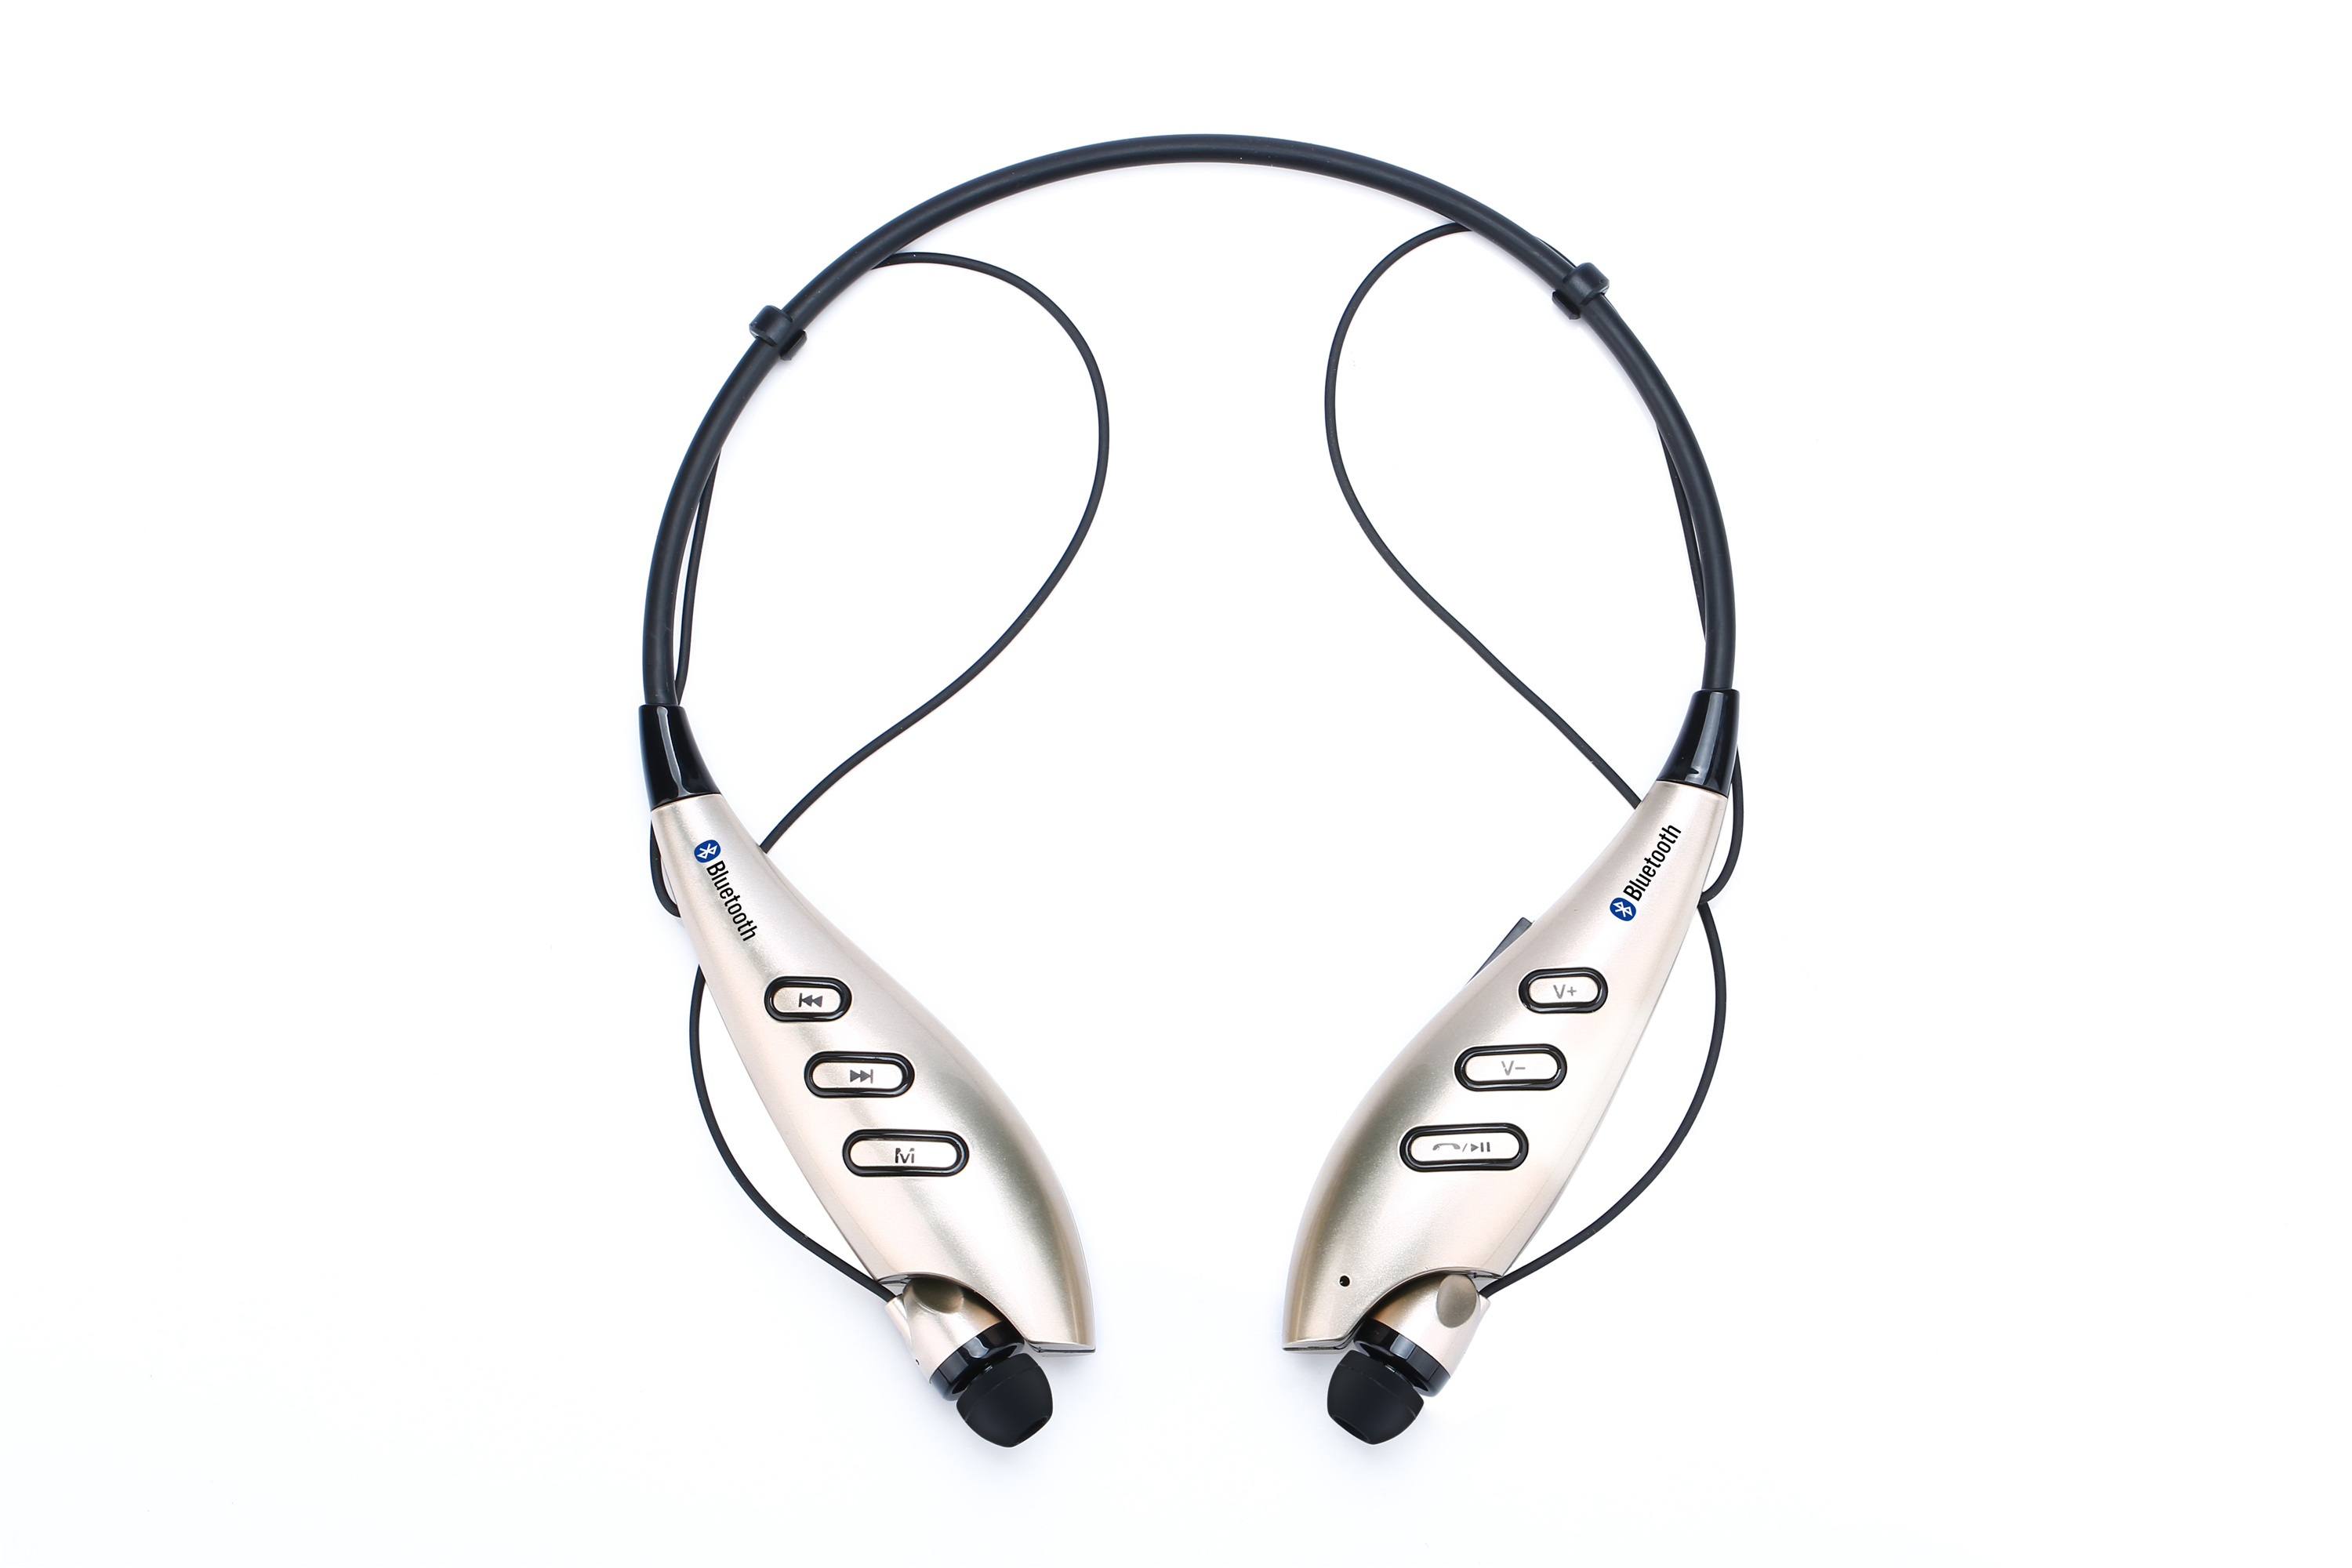 厂家直销740T蓝牙耳机　新款脖挂式蓝牙耳机　740T运动蓝牙耳机　CSR4.0蓝牙耳机　电商外贸热销耳机